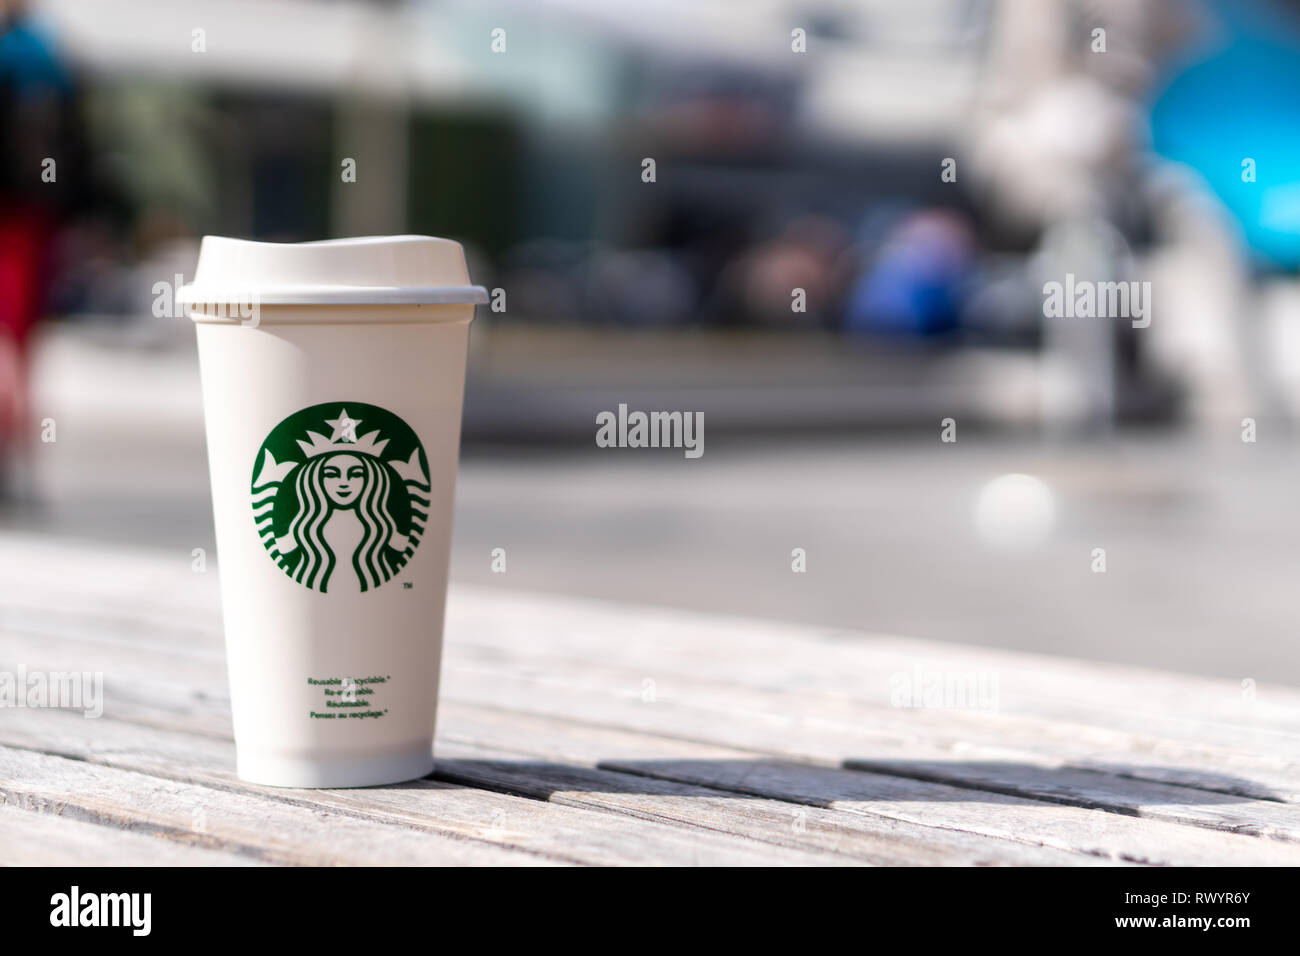 Slowenien 27.2.2019 - Starbucks nehmen, heiße Getränke Kaffeetasse mit Logo, auf den Tisch. Stockfoto